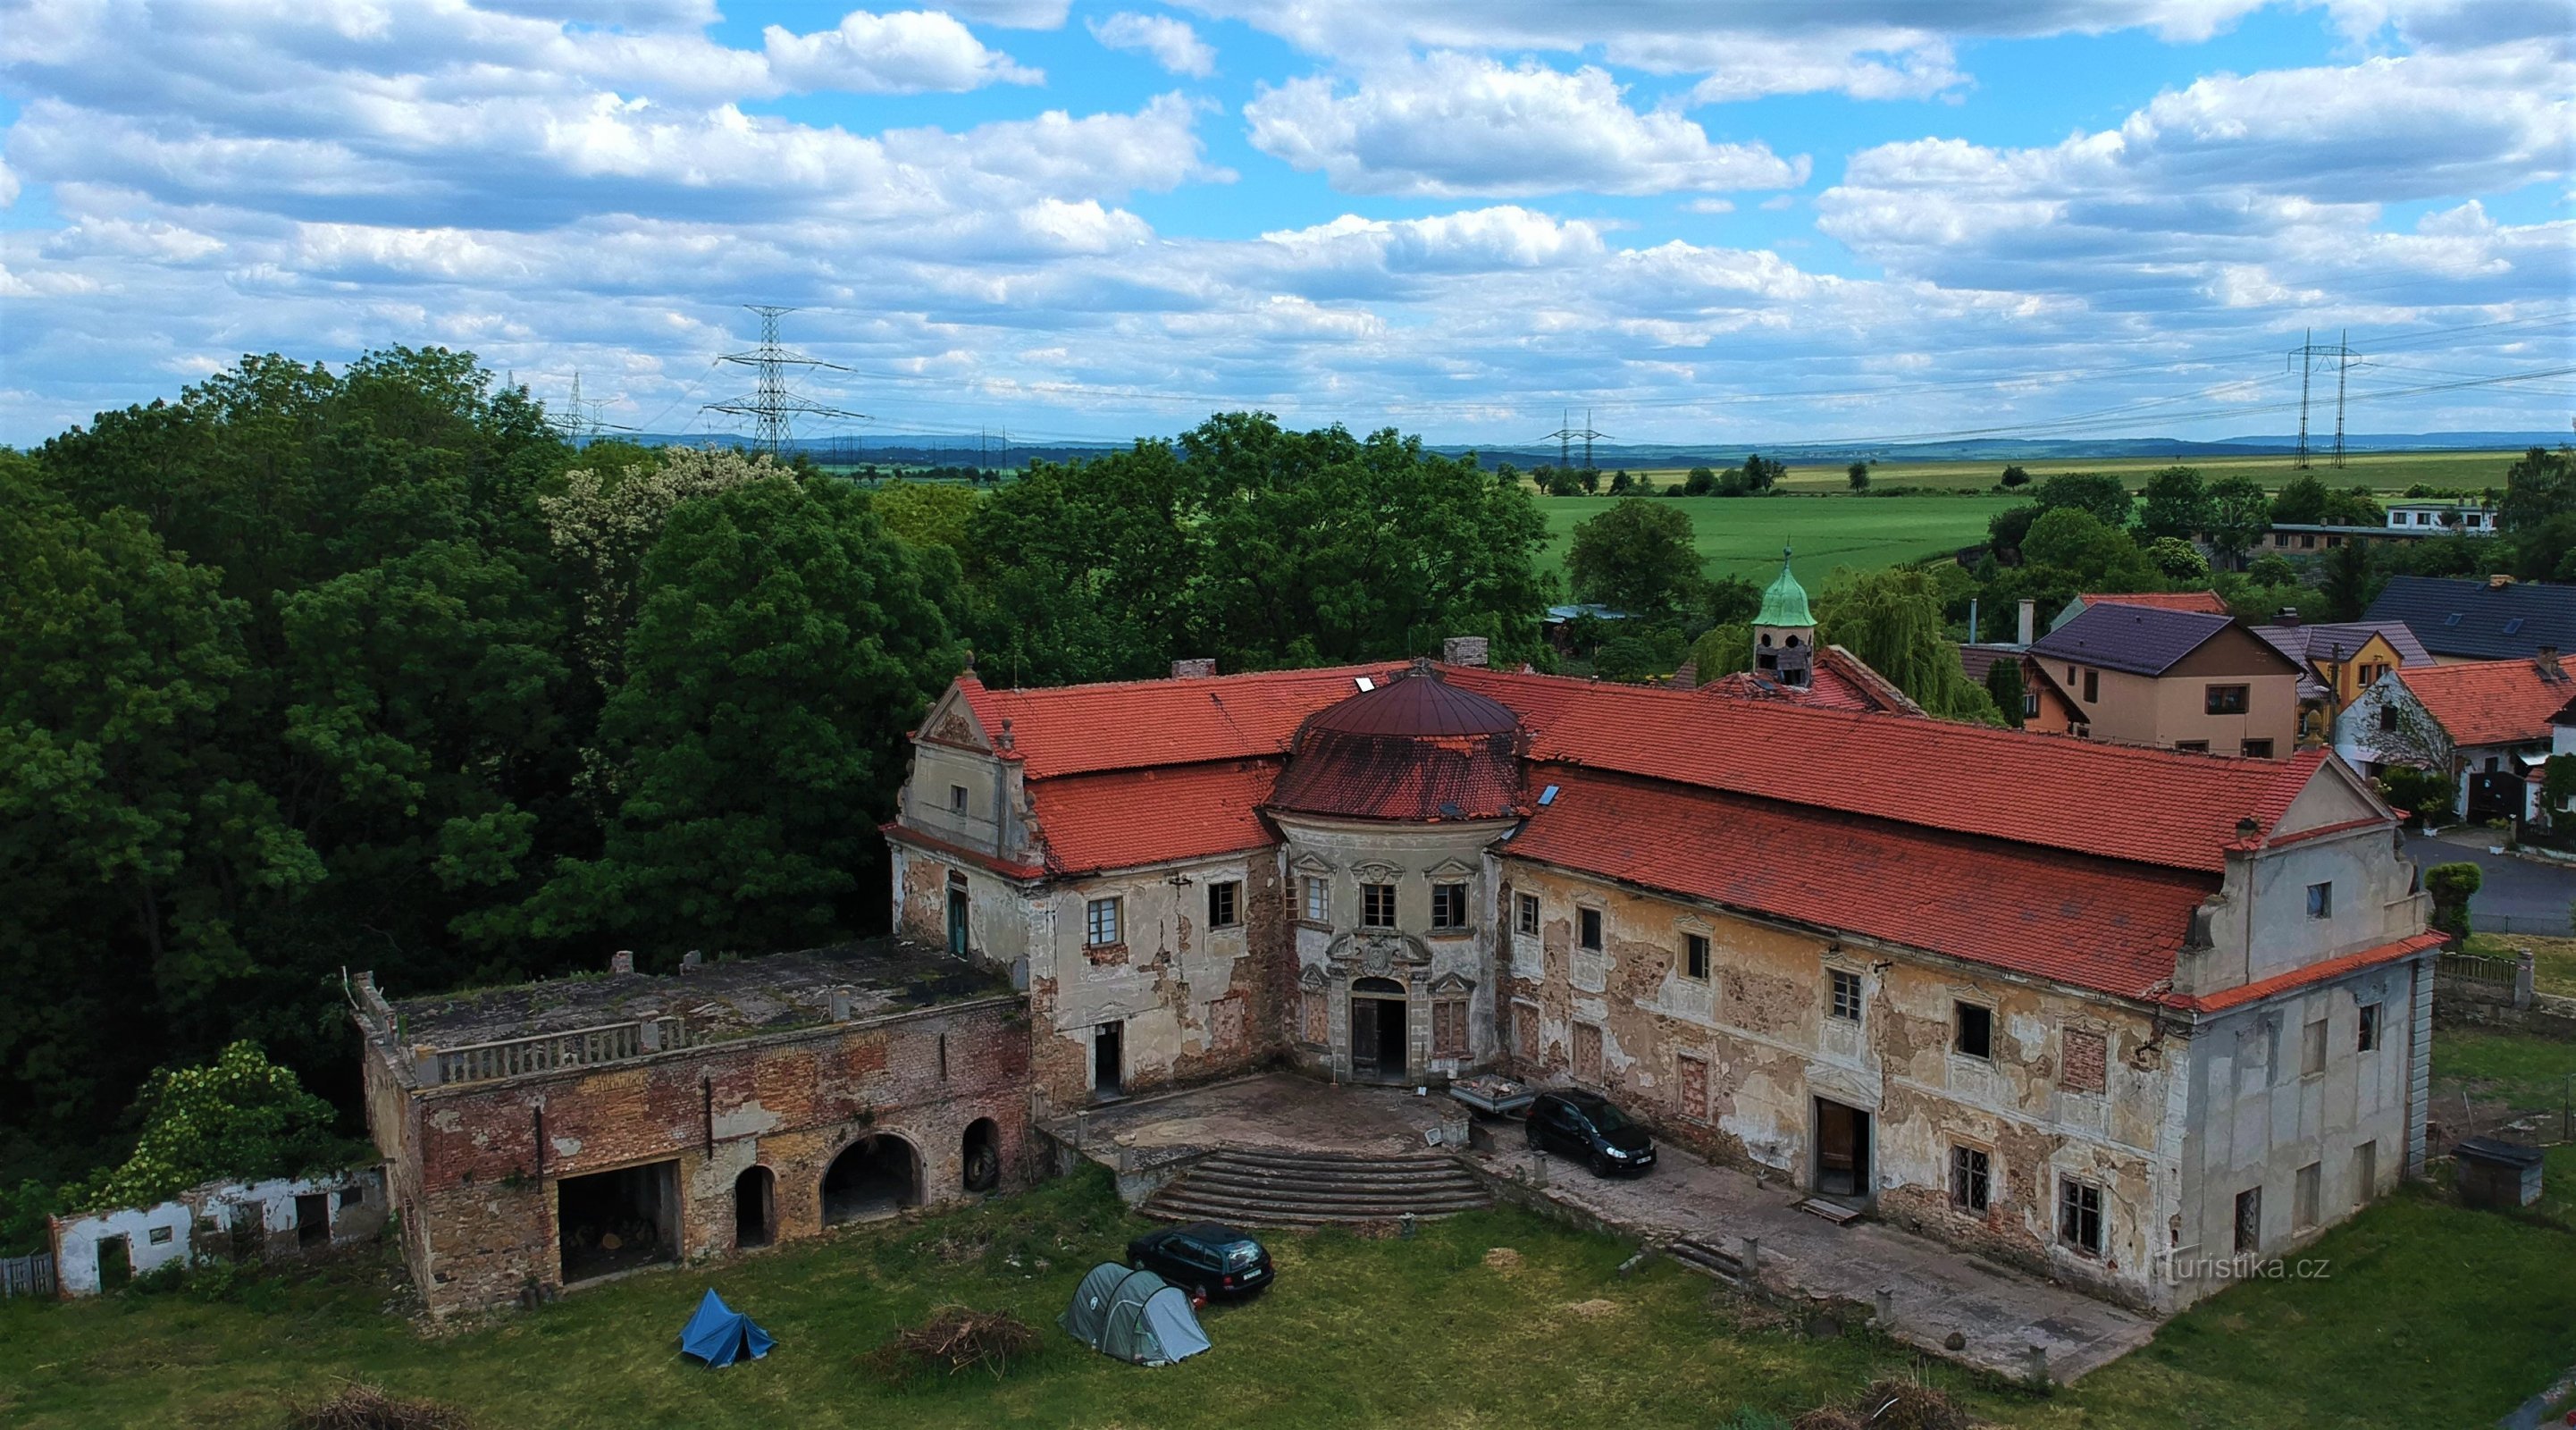 Château de Poláky - une perle baroque qui s'éveille